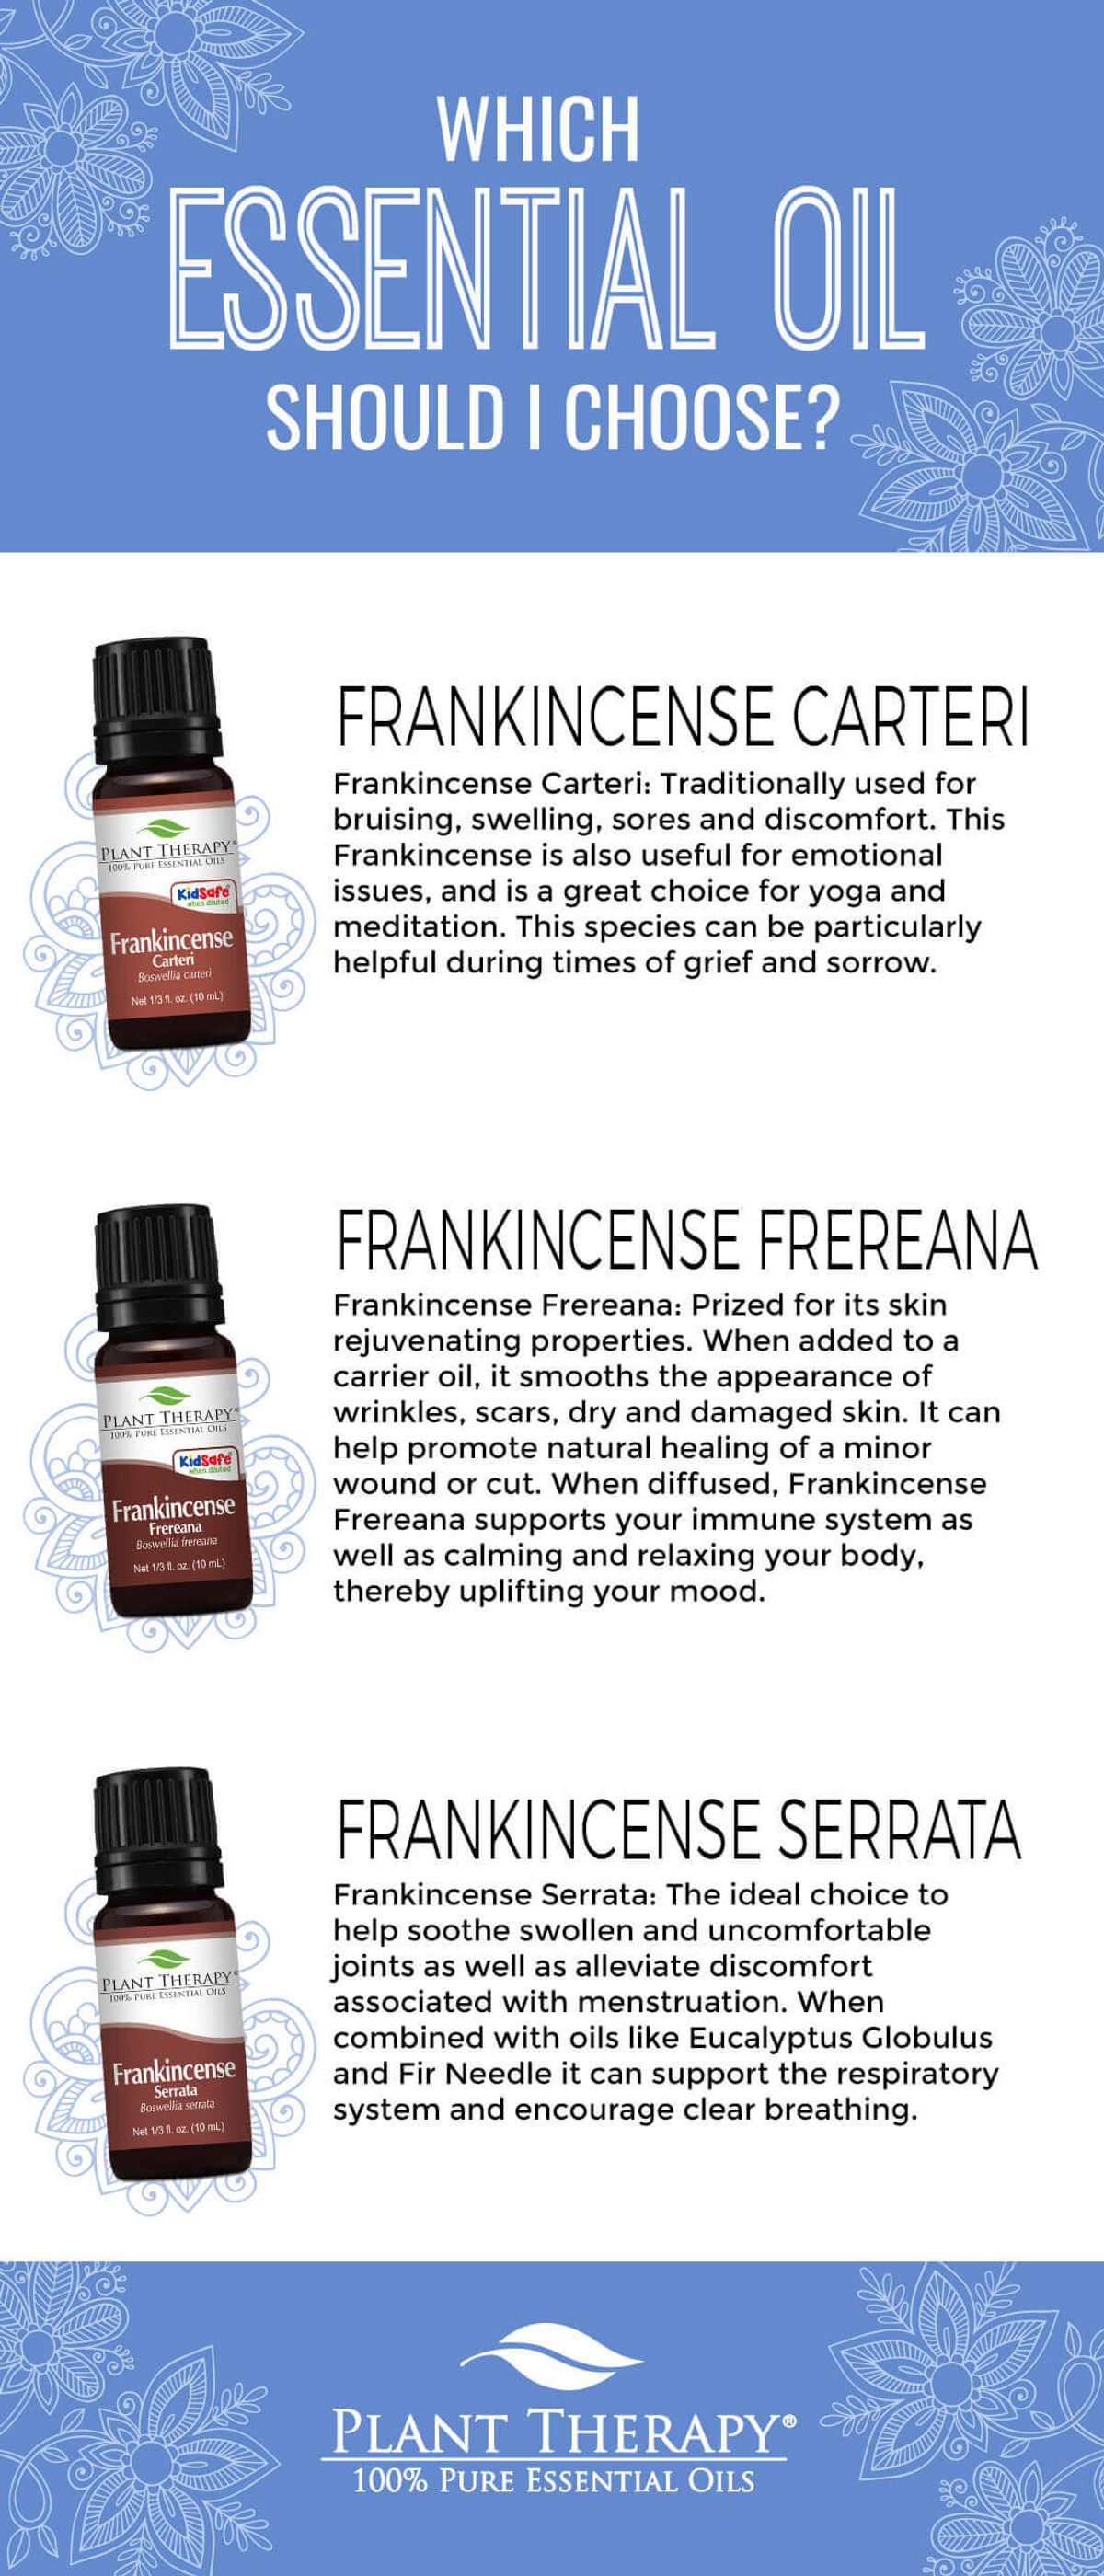 Frankincense Carteri Vs. Frankincense Frereana Vs. Frankincense Serrata + Top 5 Ways To Use Frankincense